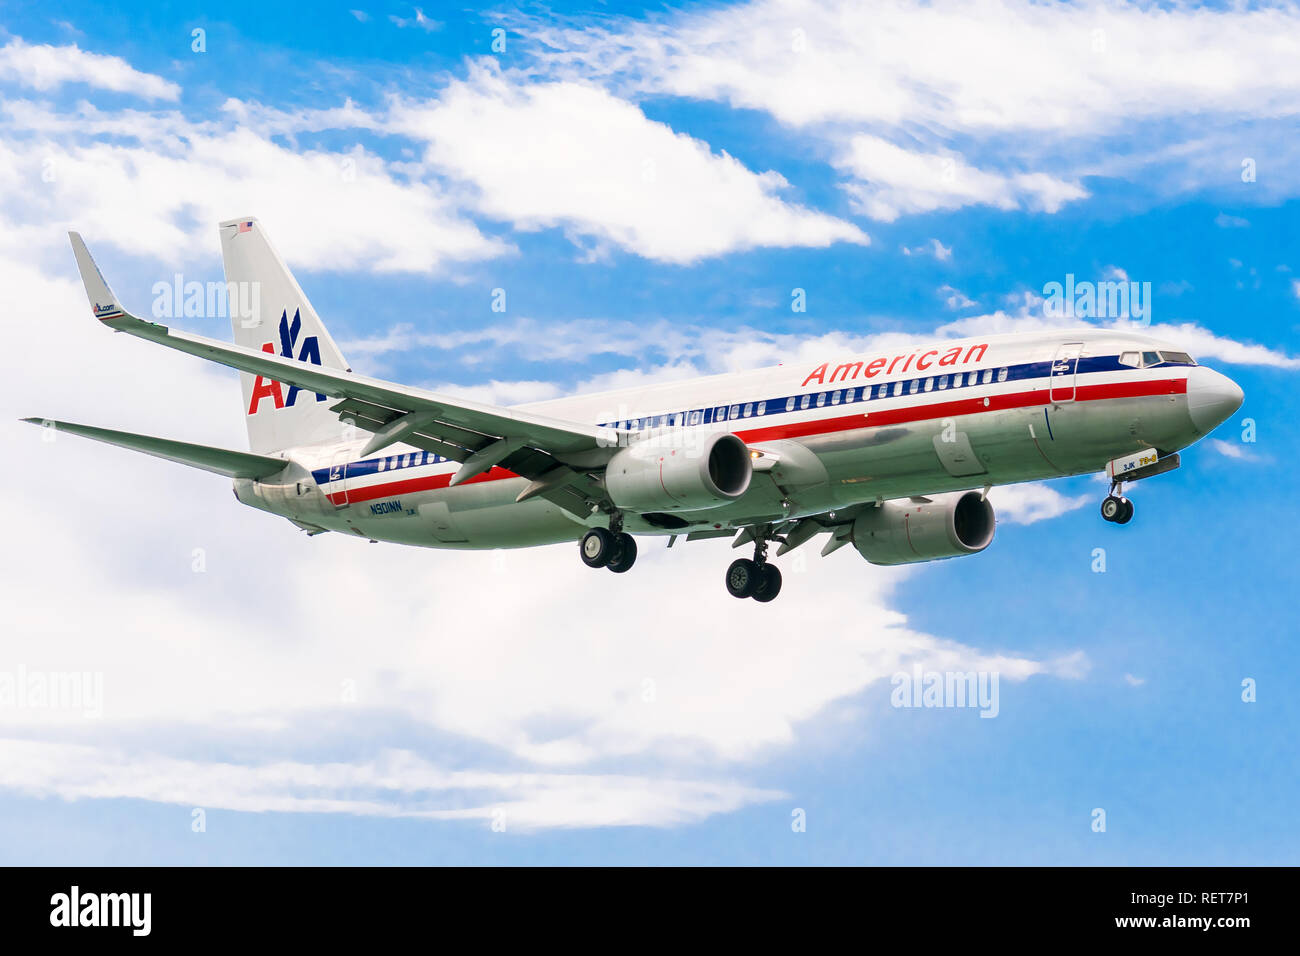 Montego Bay, Jamaïque - 19 Février 2017 : American Airlines se prépare à atterrir à l'aéroport international de Sangster (MBJ) à Montego Bay Banque D'Images